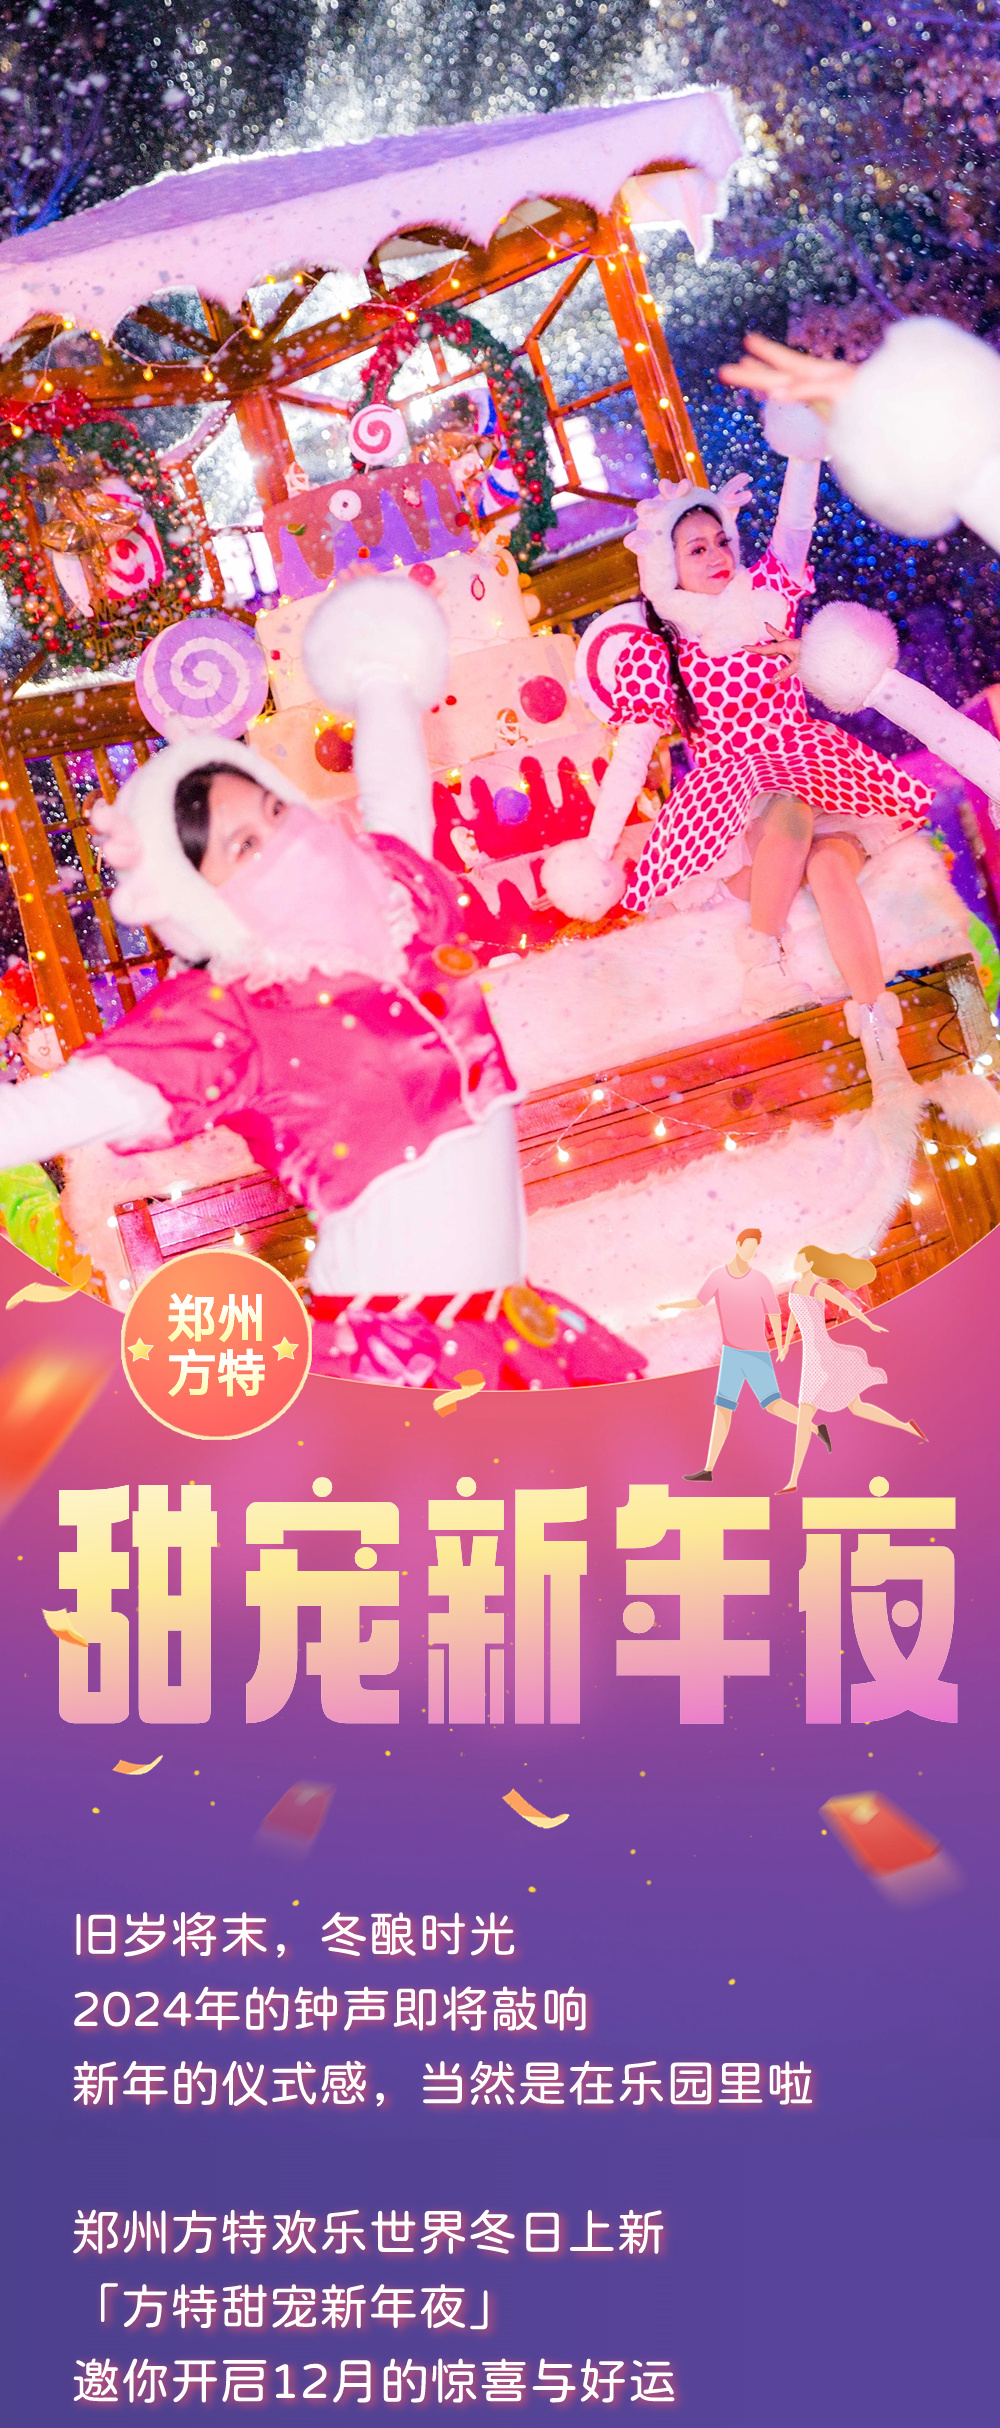 2024郑州方特欢乐世界甜宠新年夜活动时间、门票价格、活动亮点